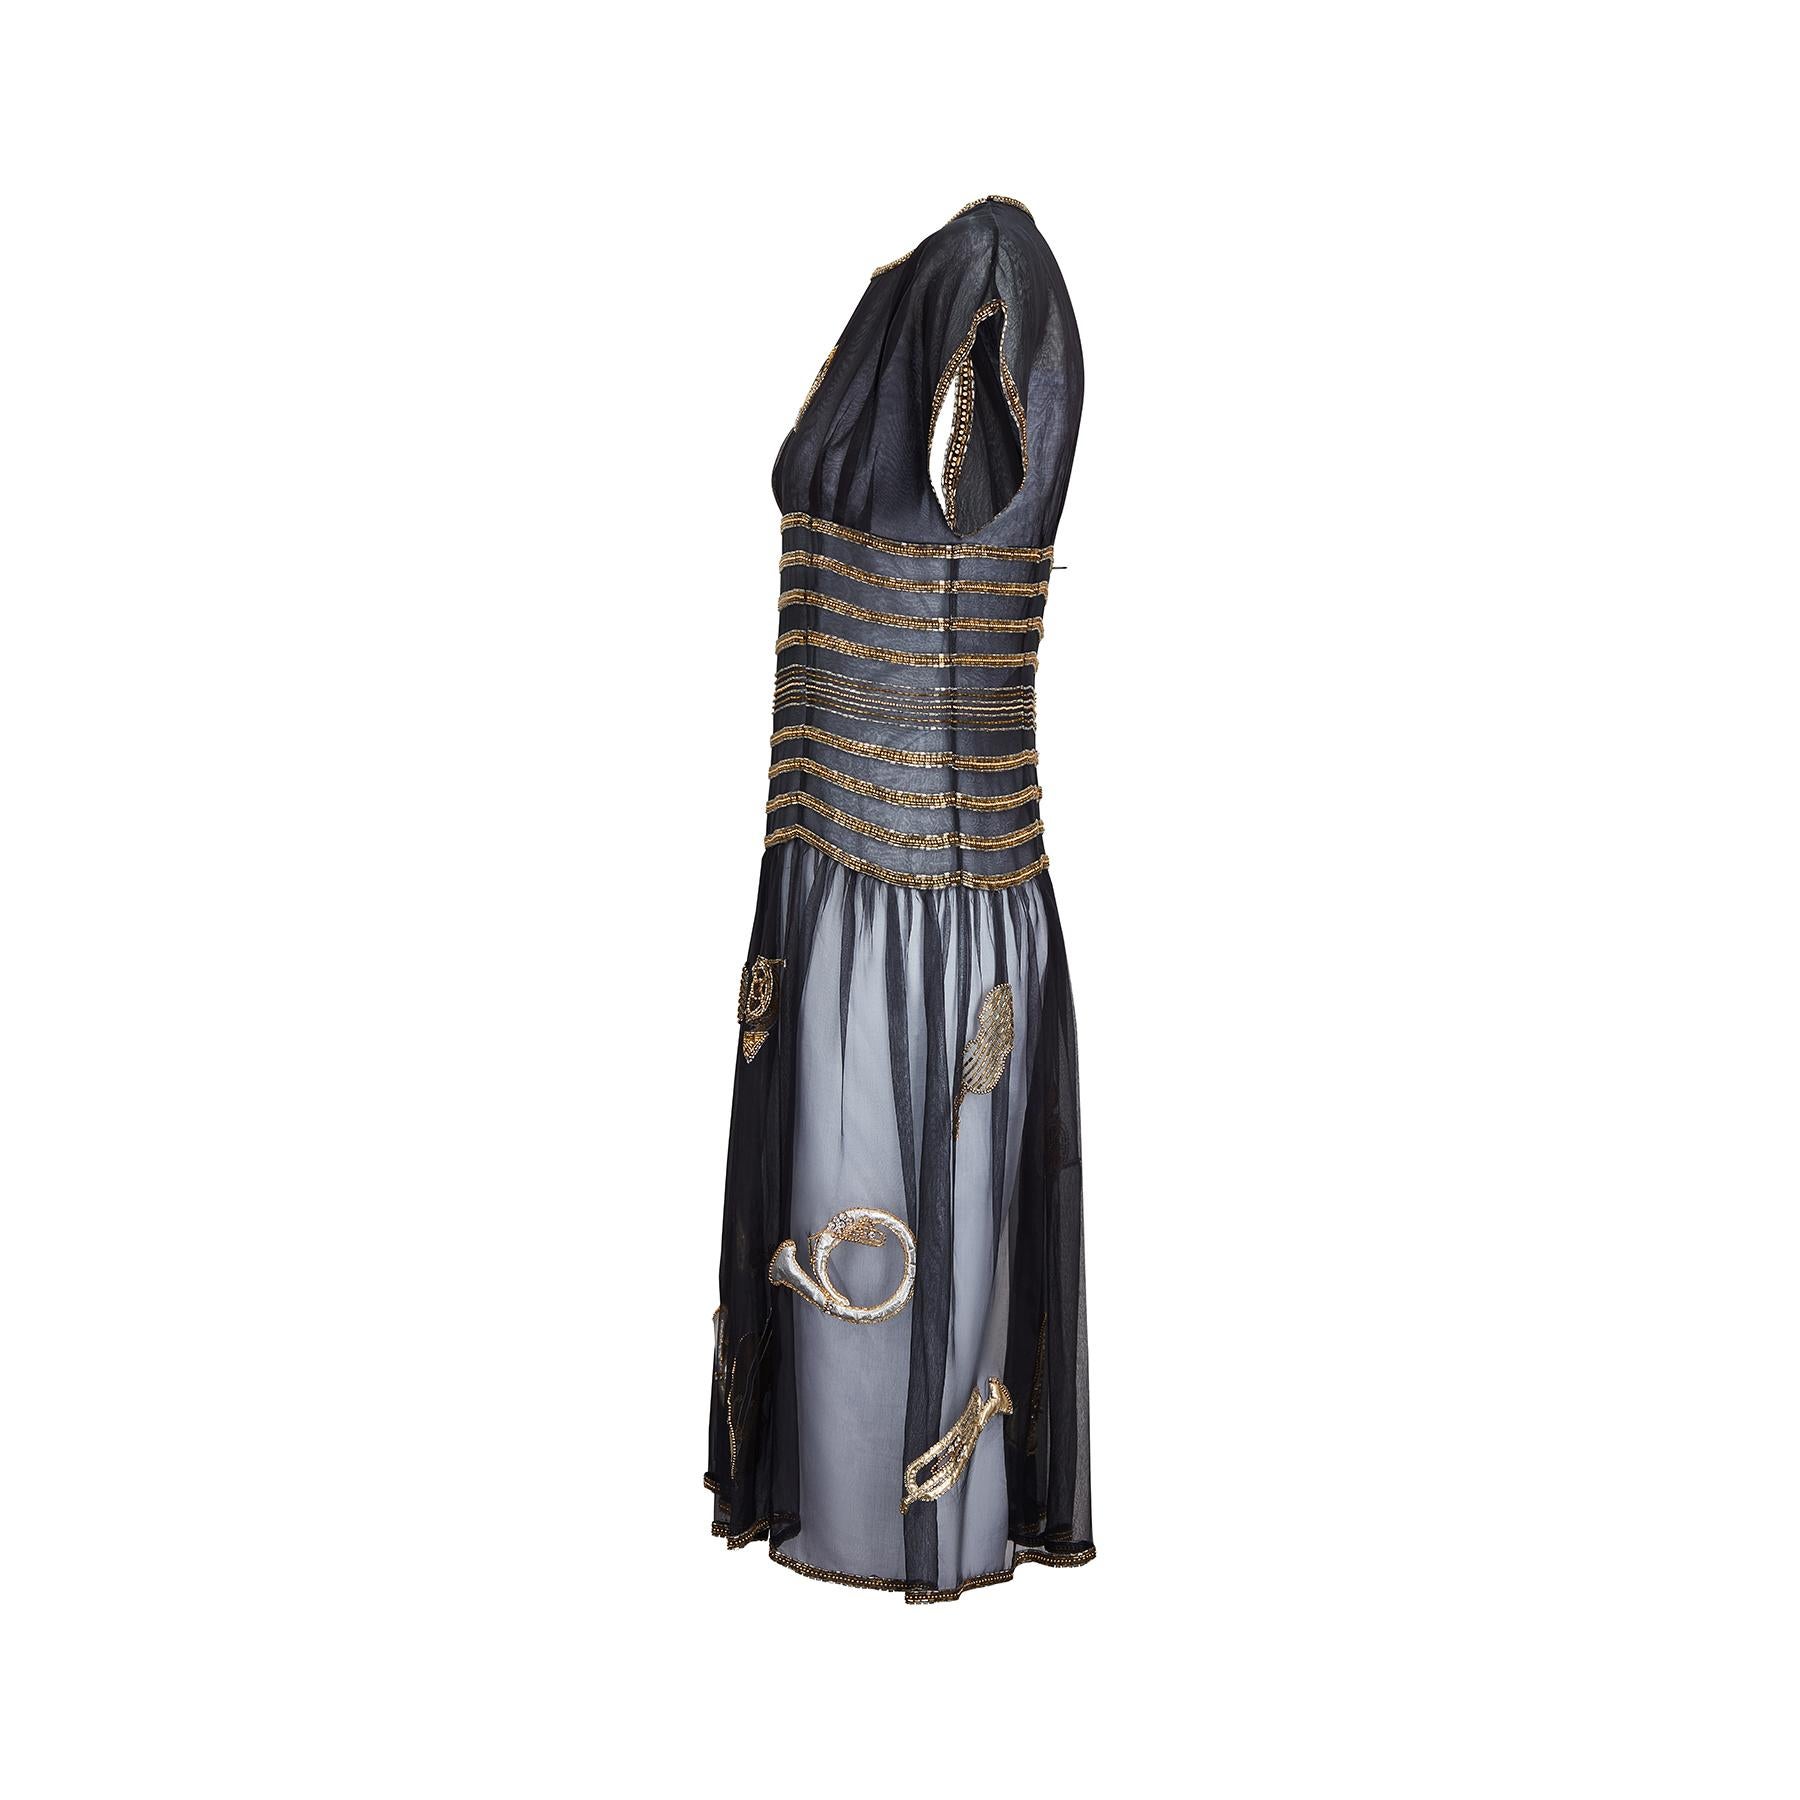 Dies ist eine feine und seltene Startbahn dokumentiert Chloe Musikinstrument Kleid.  Ein von Karl Lagerfeld entworfenes, aufsehenerregendes Stück aus der Frühjahr/Sommer-Kollektion 1983. Aufwendig mit Perlen verzierte Kleider mit neuartigen und